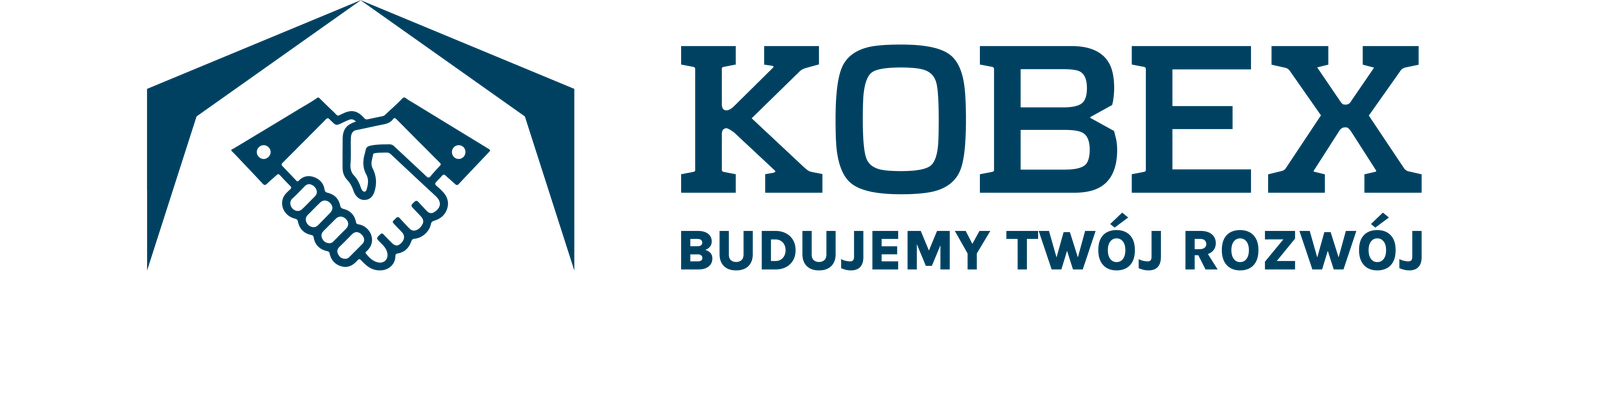 logo_kobexz_dopiskiem.png